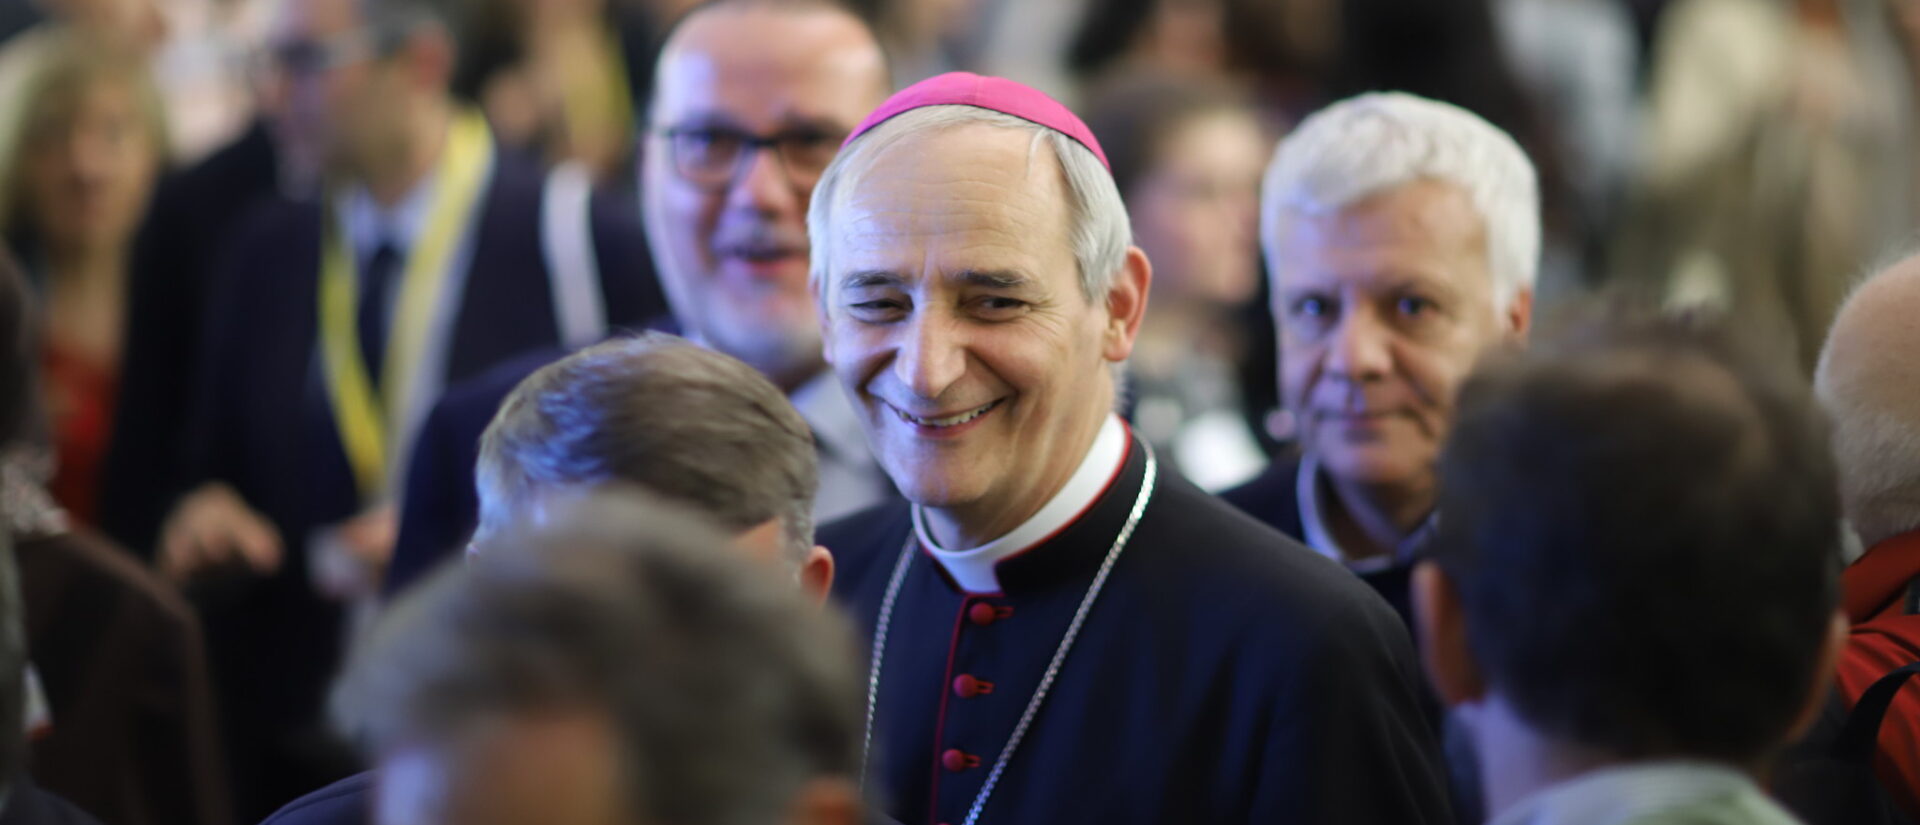 Mgr Matteo Zuppi, archevêque de Bologne, est le nouveau chef de l'épiscopat italien | © Francesco Pierantoni/Flickr/CC BY 2.0